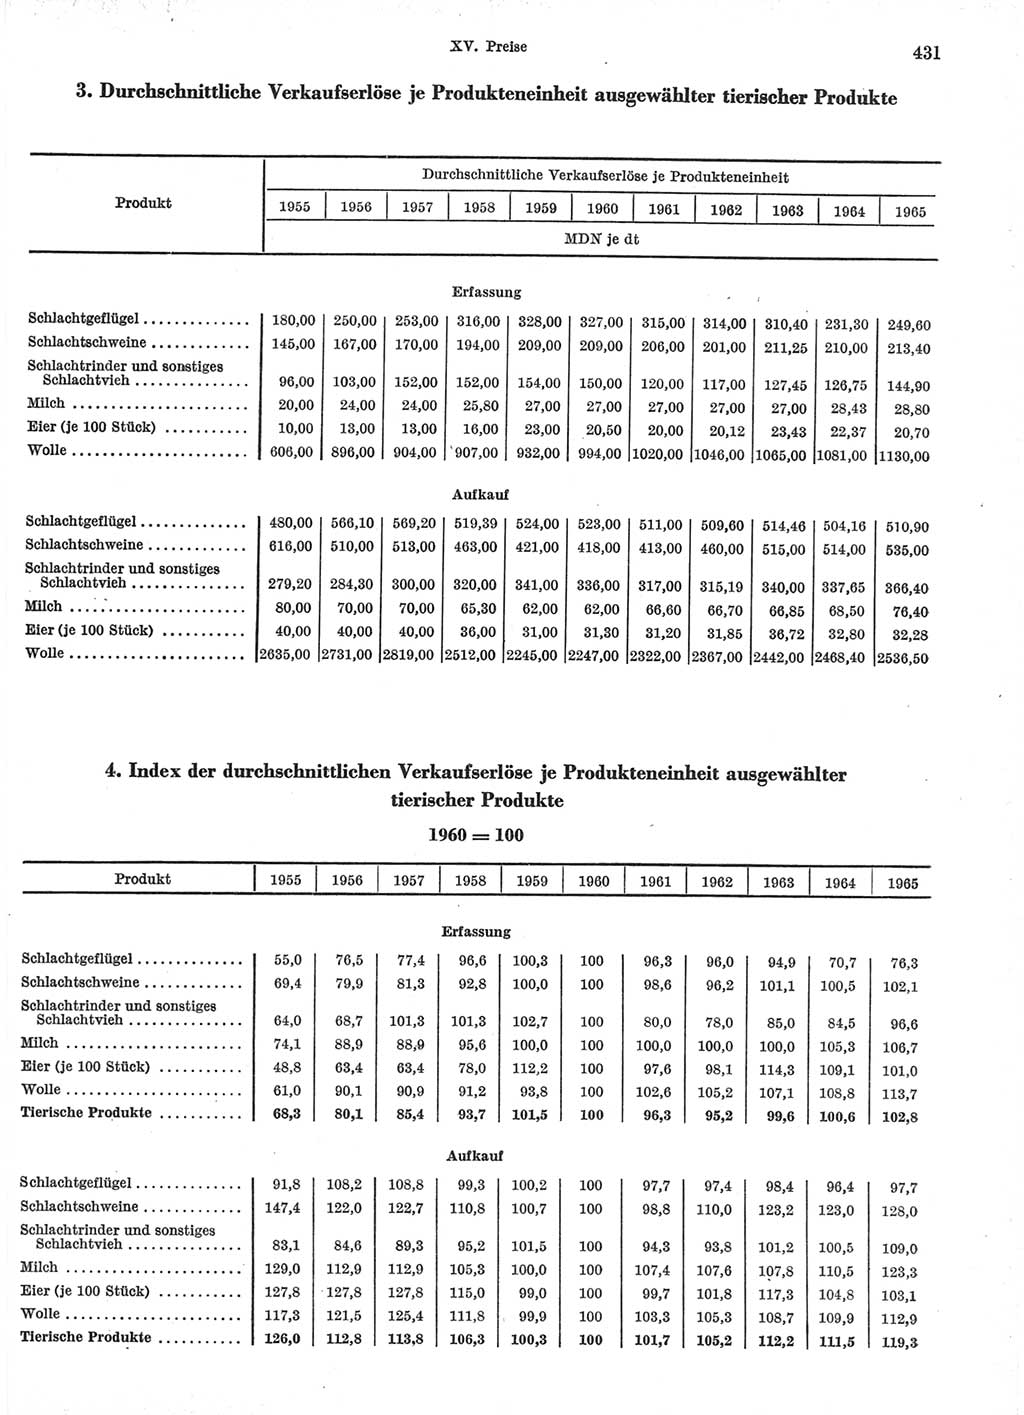 Statistisches Jahrbuch der Deutschen Demokratischen Republik (DDR) 1966, Seite 431 (Stat. Jb. DDR 1966, S. 431)